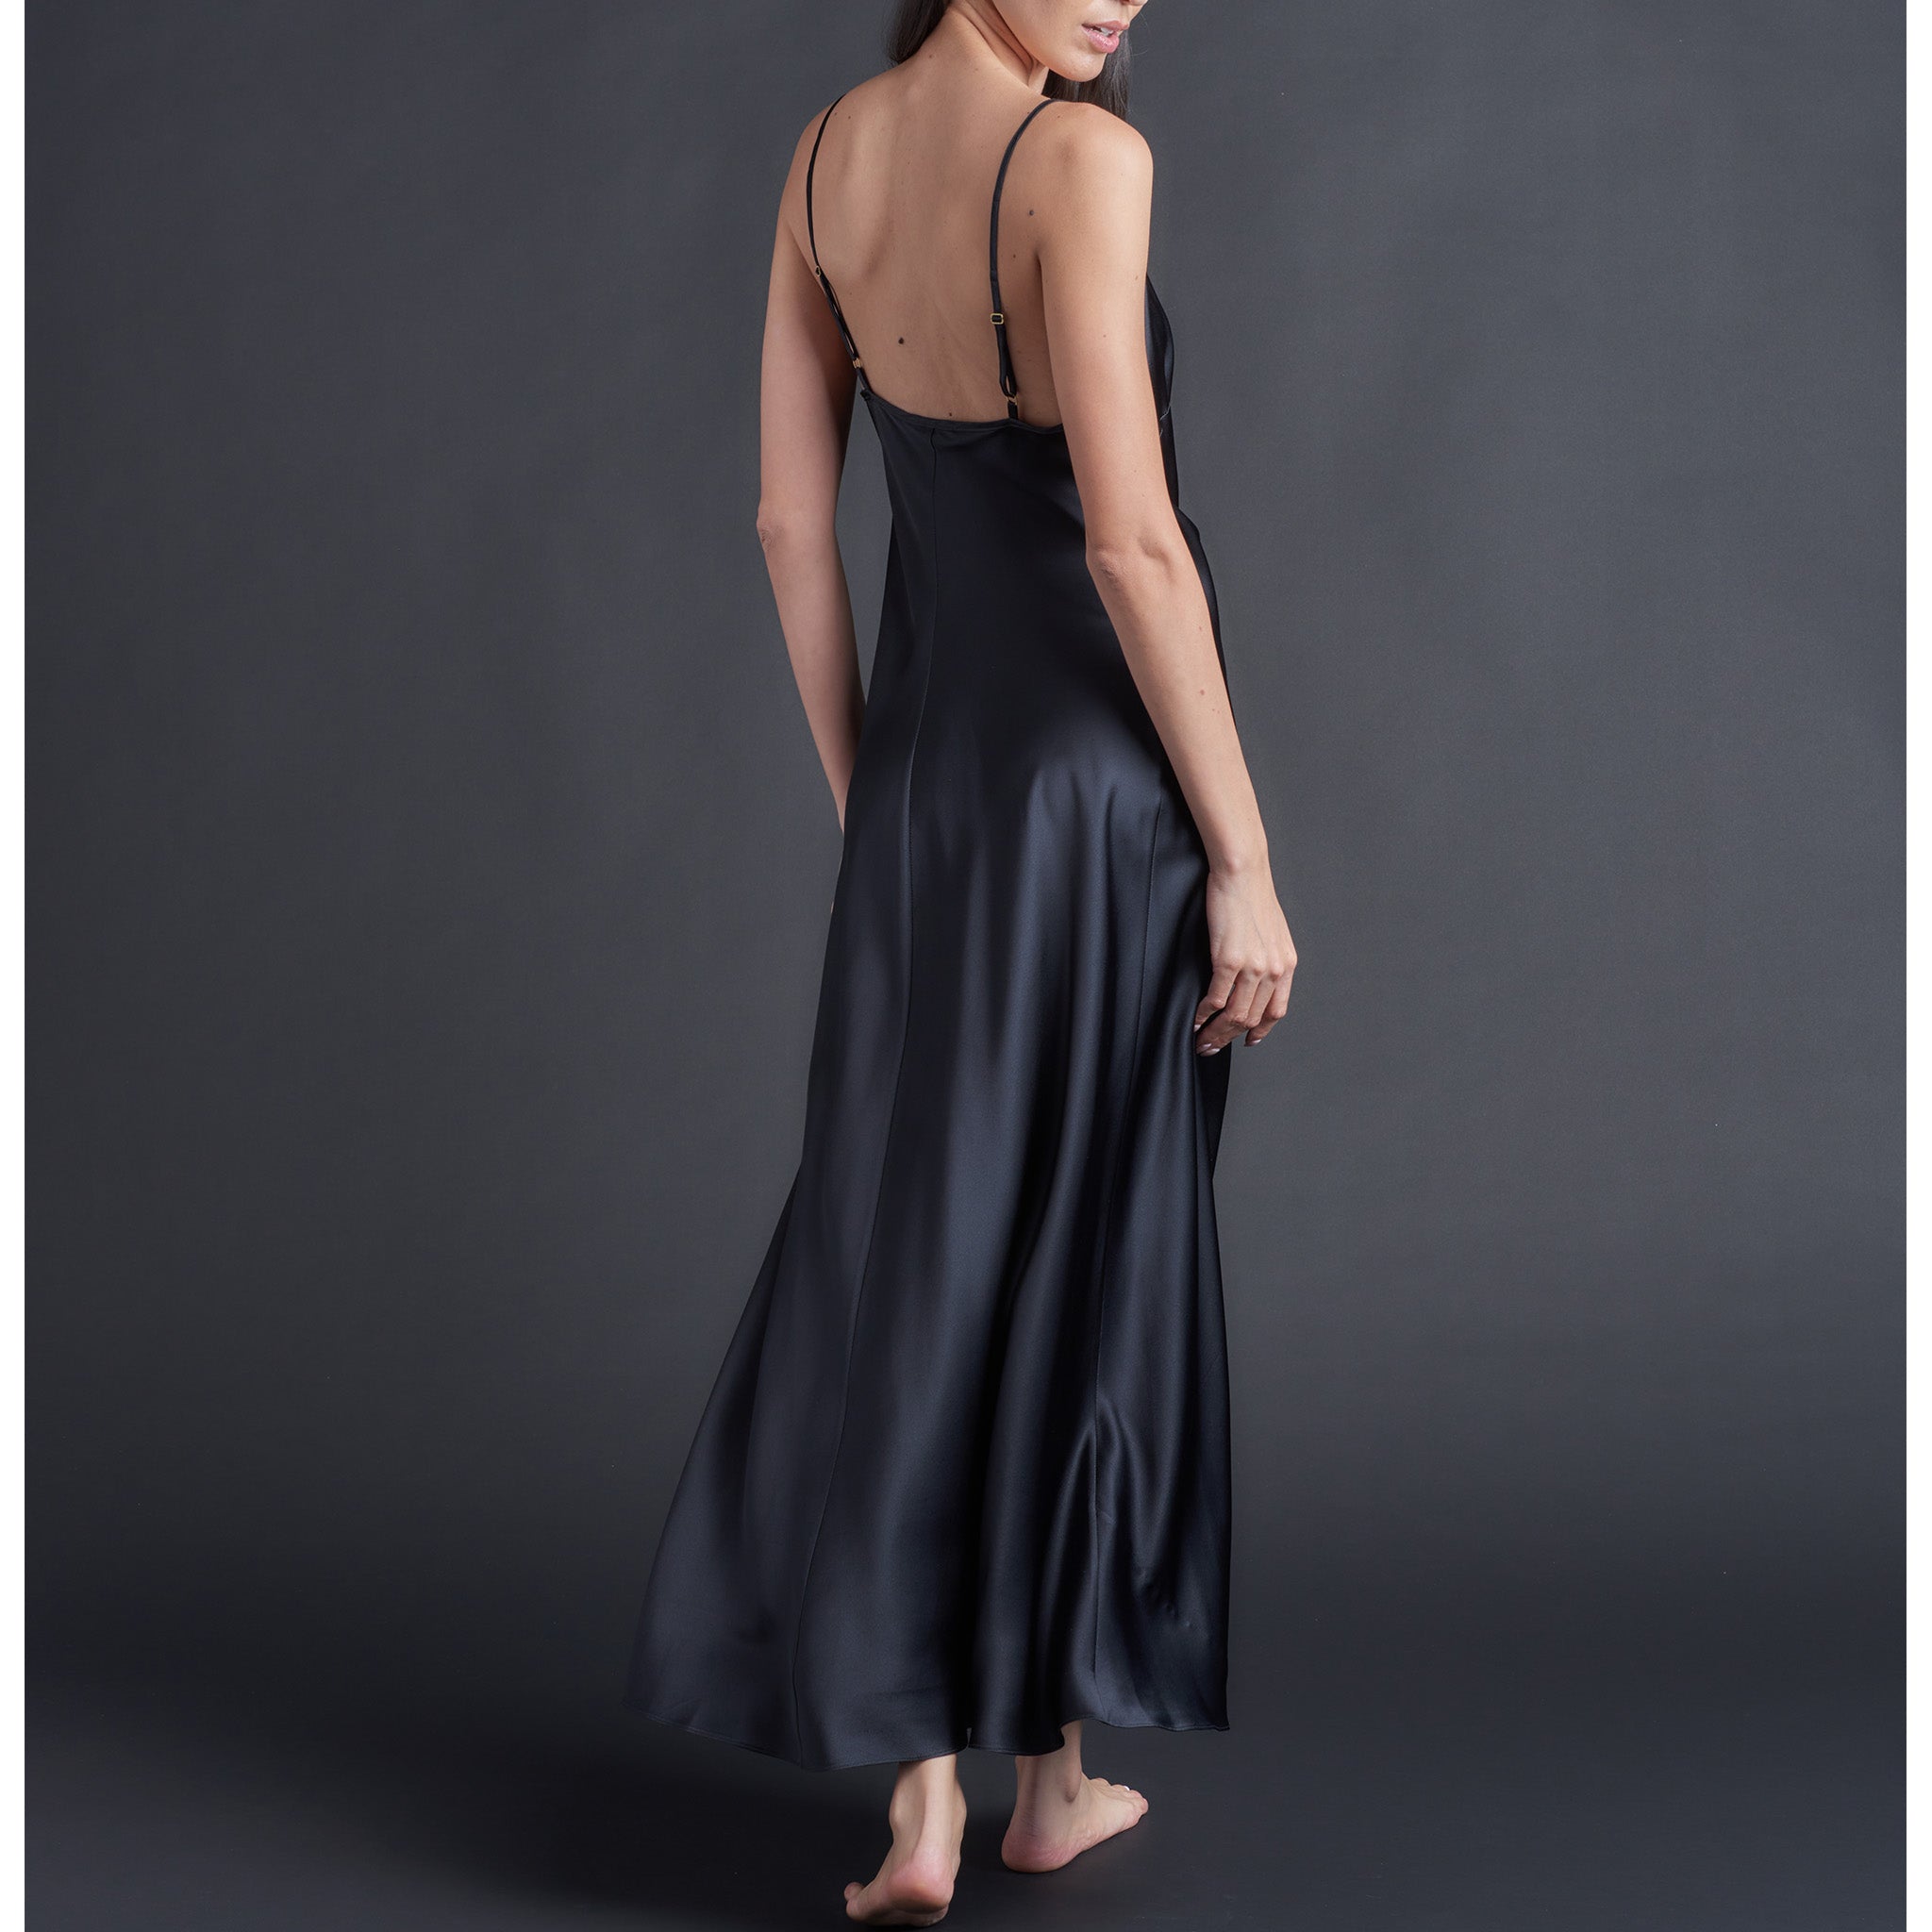 Juno Slip Dress in Black Silk Charmeuse